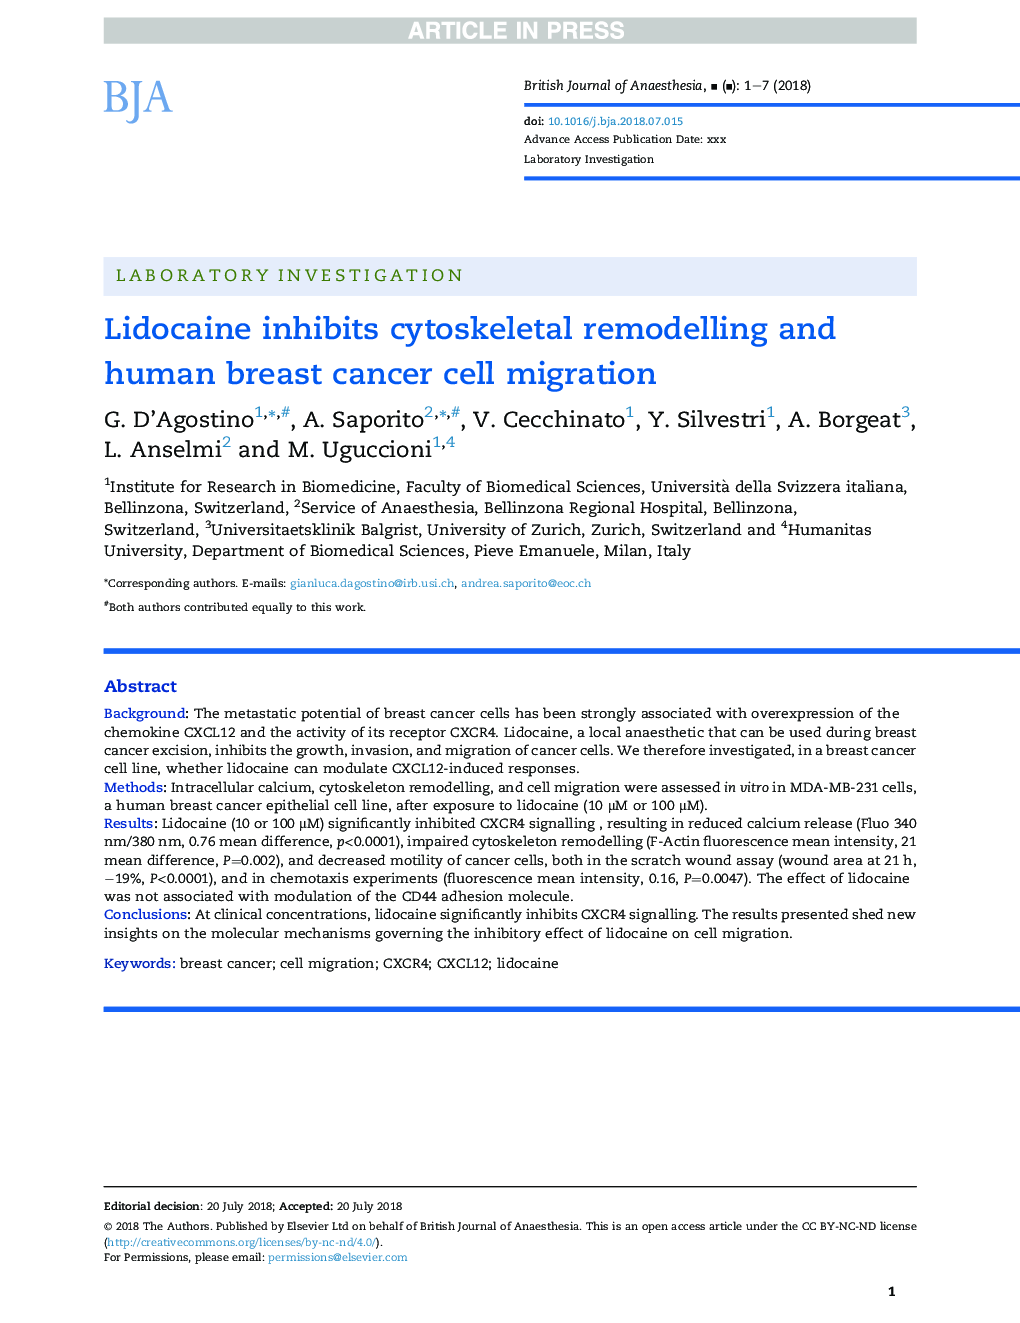 لیدوکائین مانع بازسازی سلول های بنیادی و سلول های سرطان سینه انسان می شود